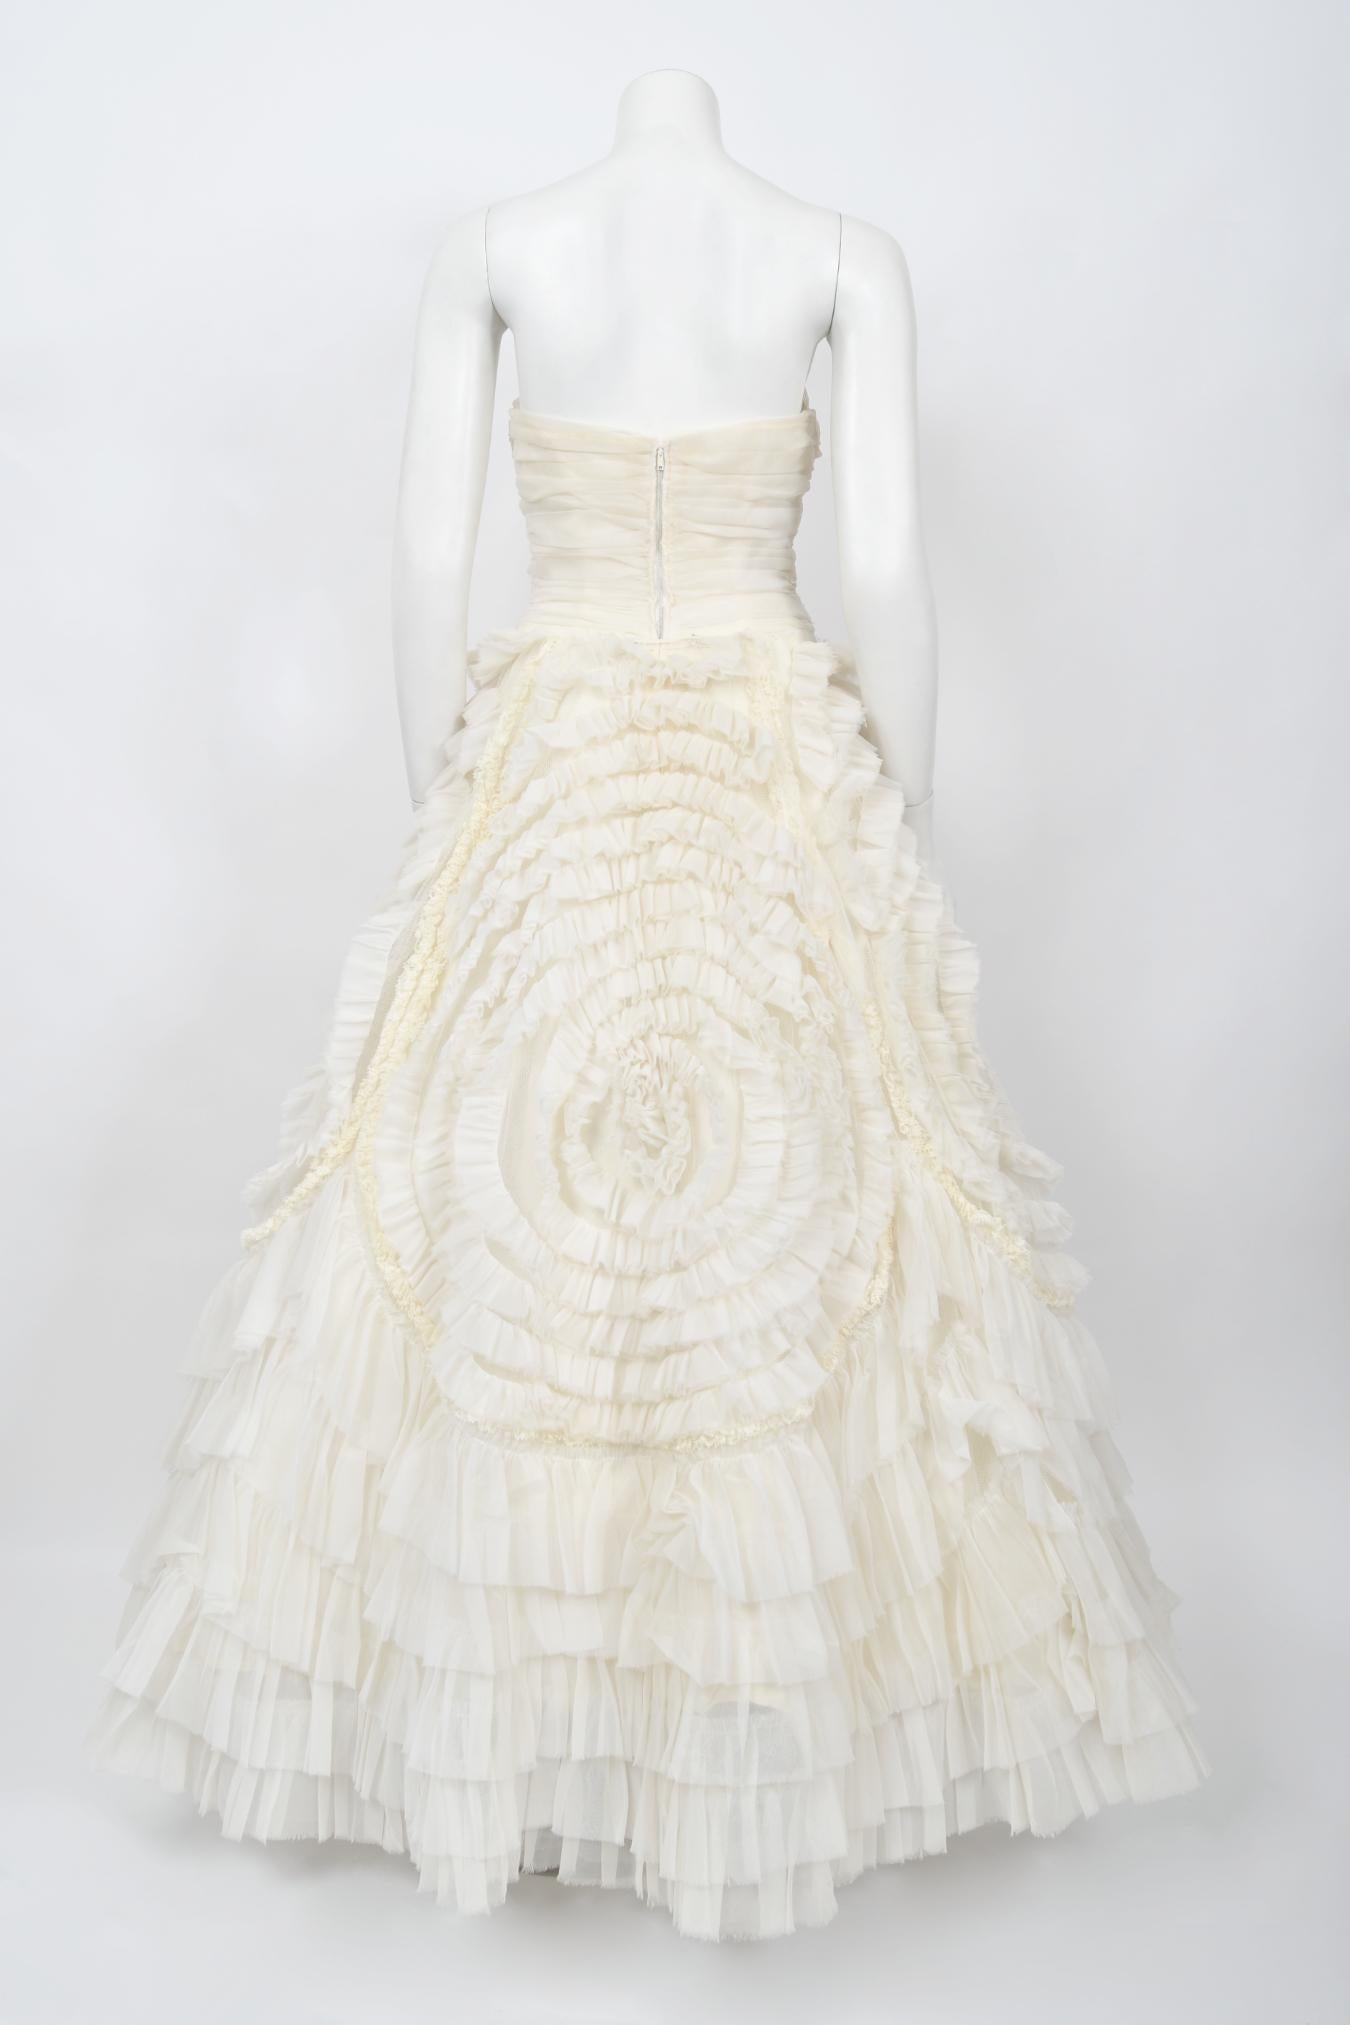 Vintage 1950's Elfenbein Chiffon trägerlos Tiered Ruffle voller Länge Hochzeitskleid  9